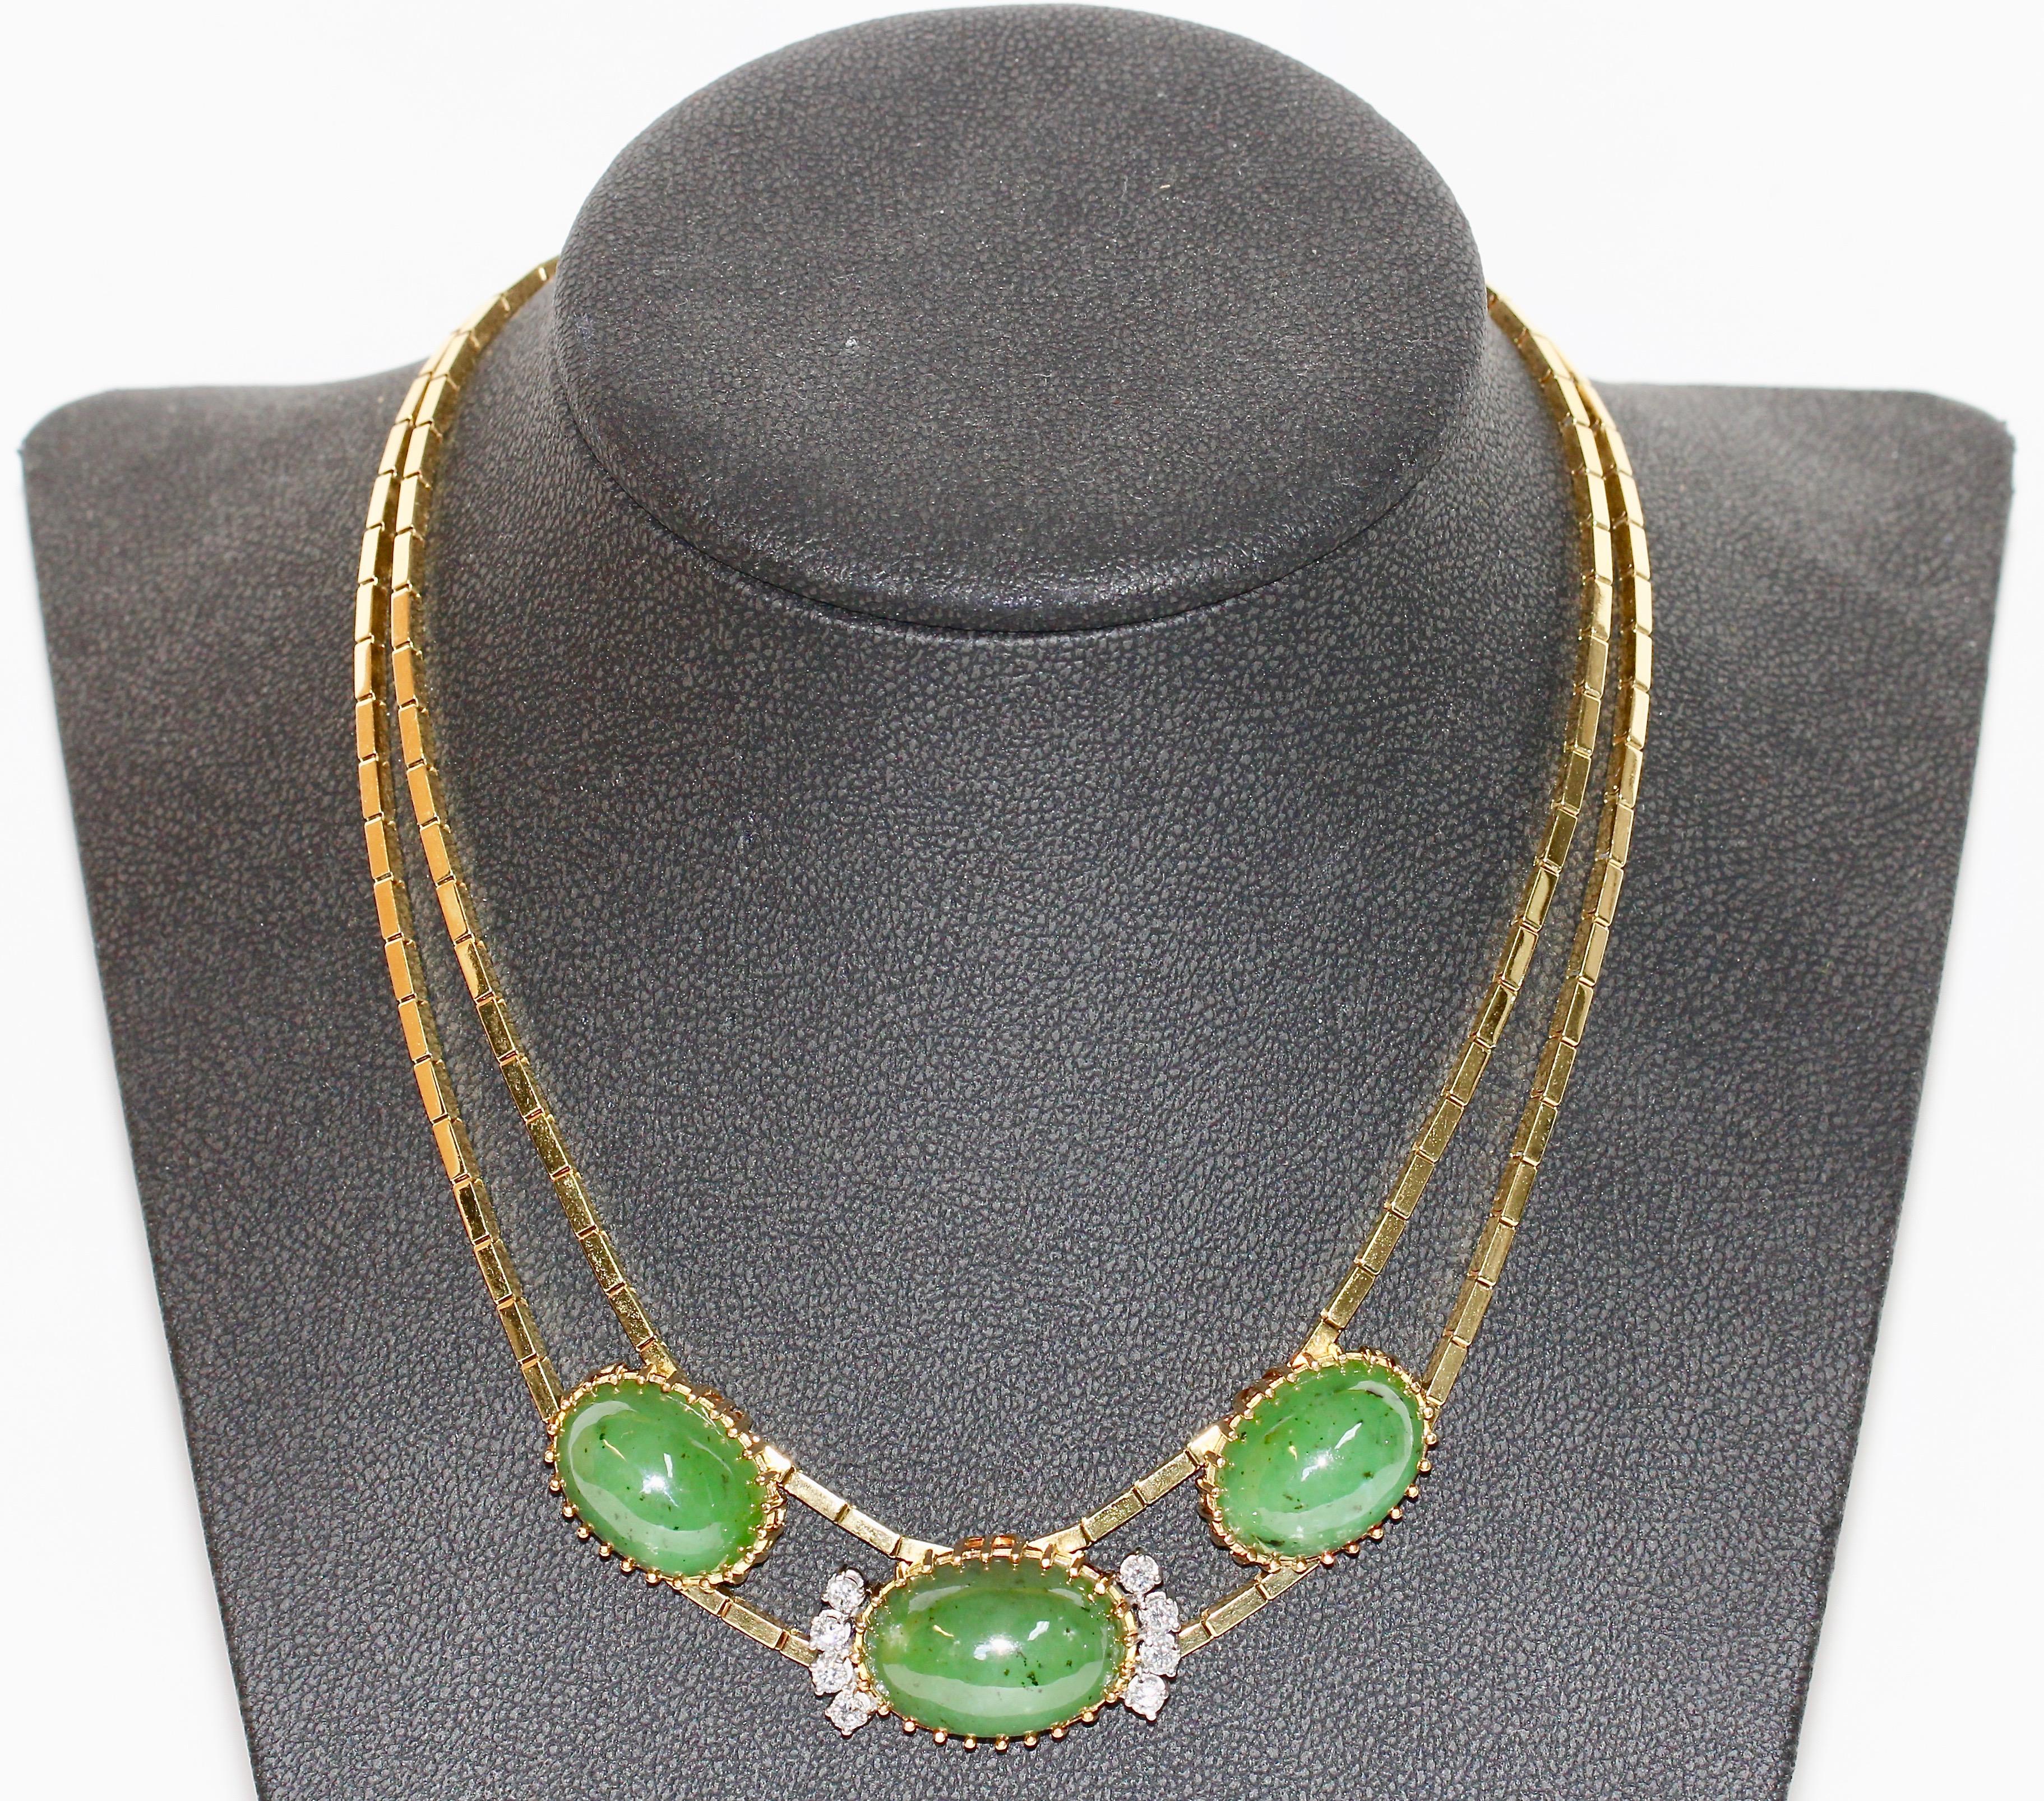 Grand collier de jade, or 18 carats avec diamants.

Les huit diamants ont une très bonne clarté et une couleur blanche.

Vous trouverez le bracelet, la bague et le pendentif assortis dans nos autres offres.